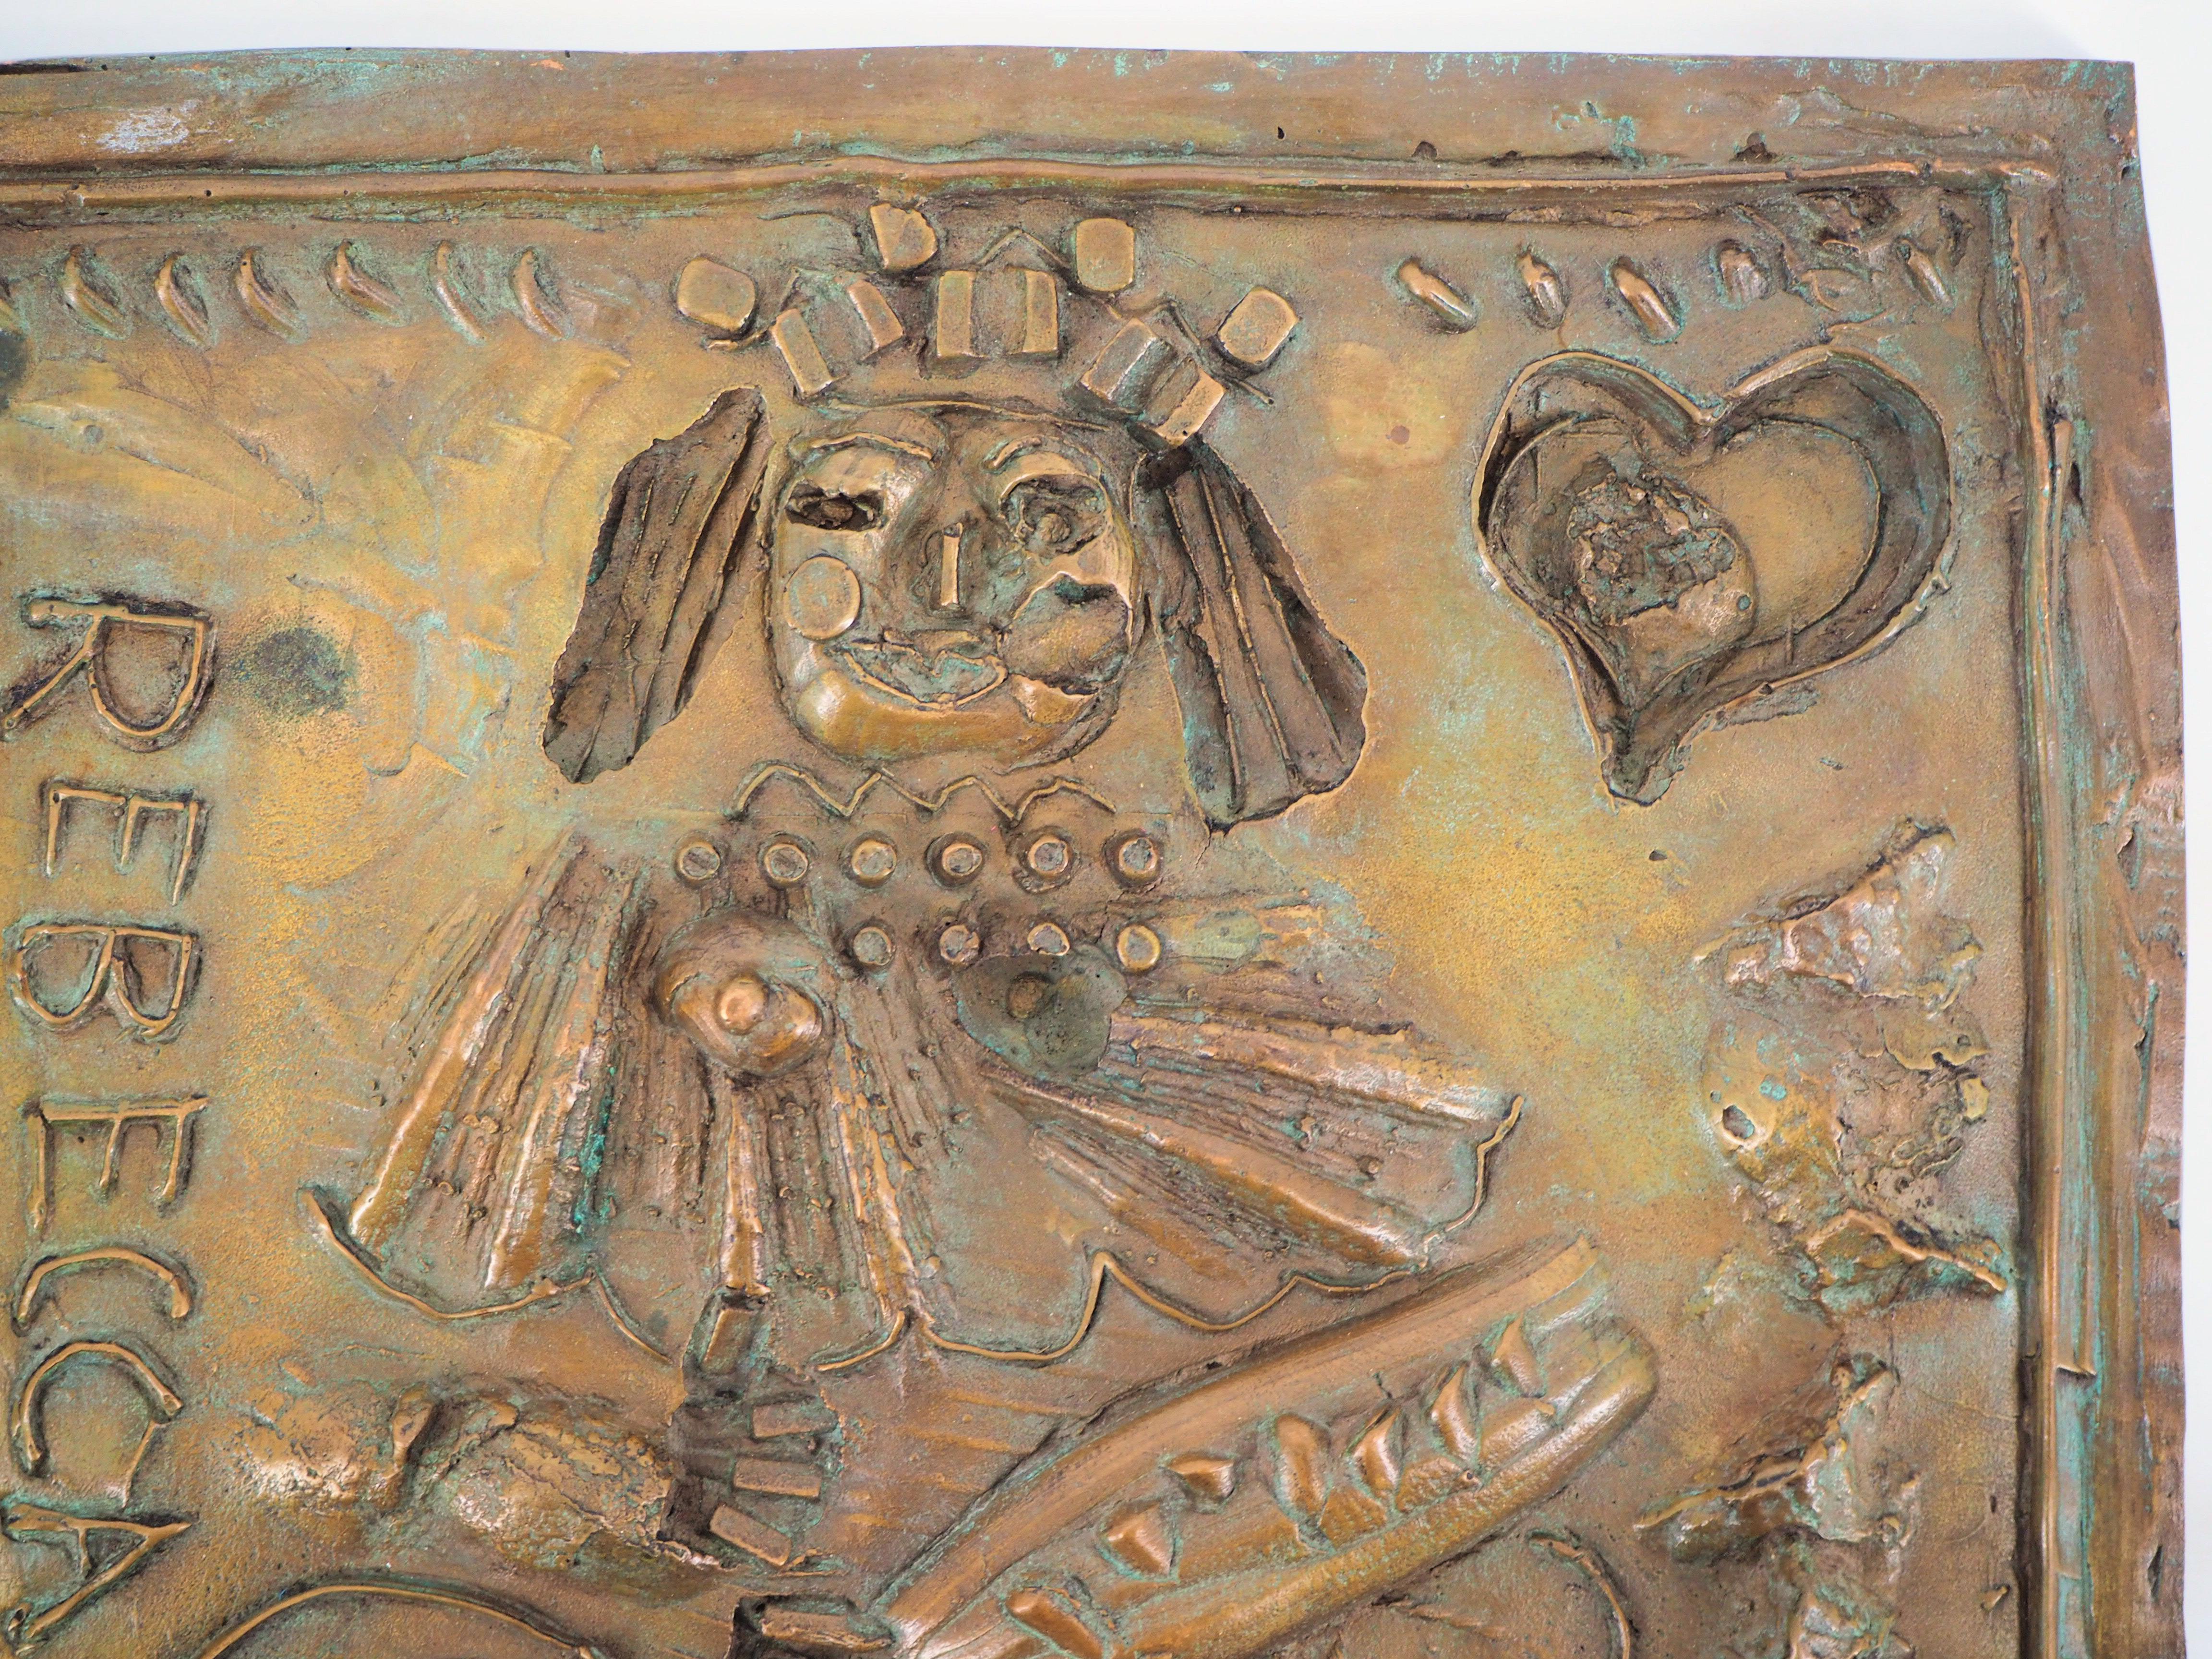 Biblical Matriarch : Rebecca - Original Bronze Sculpture, Signed /100 - Gold Figurative Sculpture by Théo Tobiasse